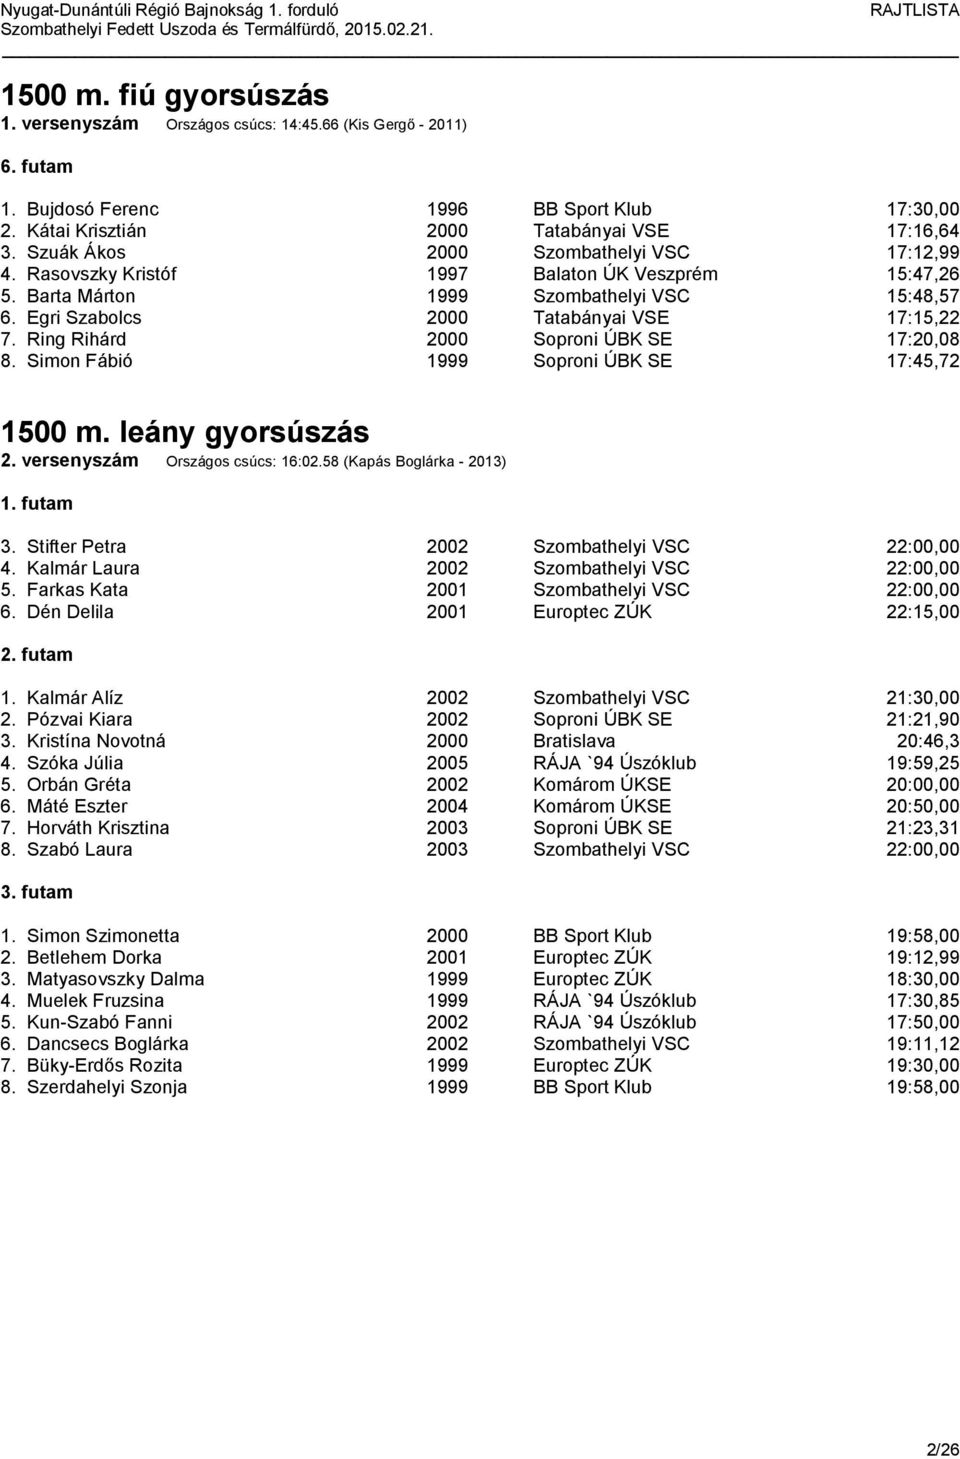 Ring Rihárd 2000 Soproni ÚBK SE 17:20,08 8. Simon Fábió 1999 Soproni ÚBK SE 17:45,72 1500 m. leány gyorsúszás 2. versenyszám Országos csúcs: 16:02.58 (Kapás Boglárka - 2013) 3.